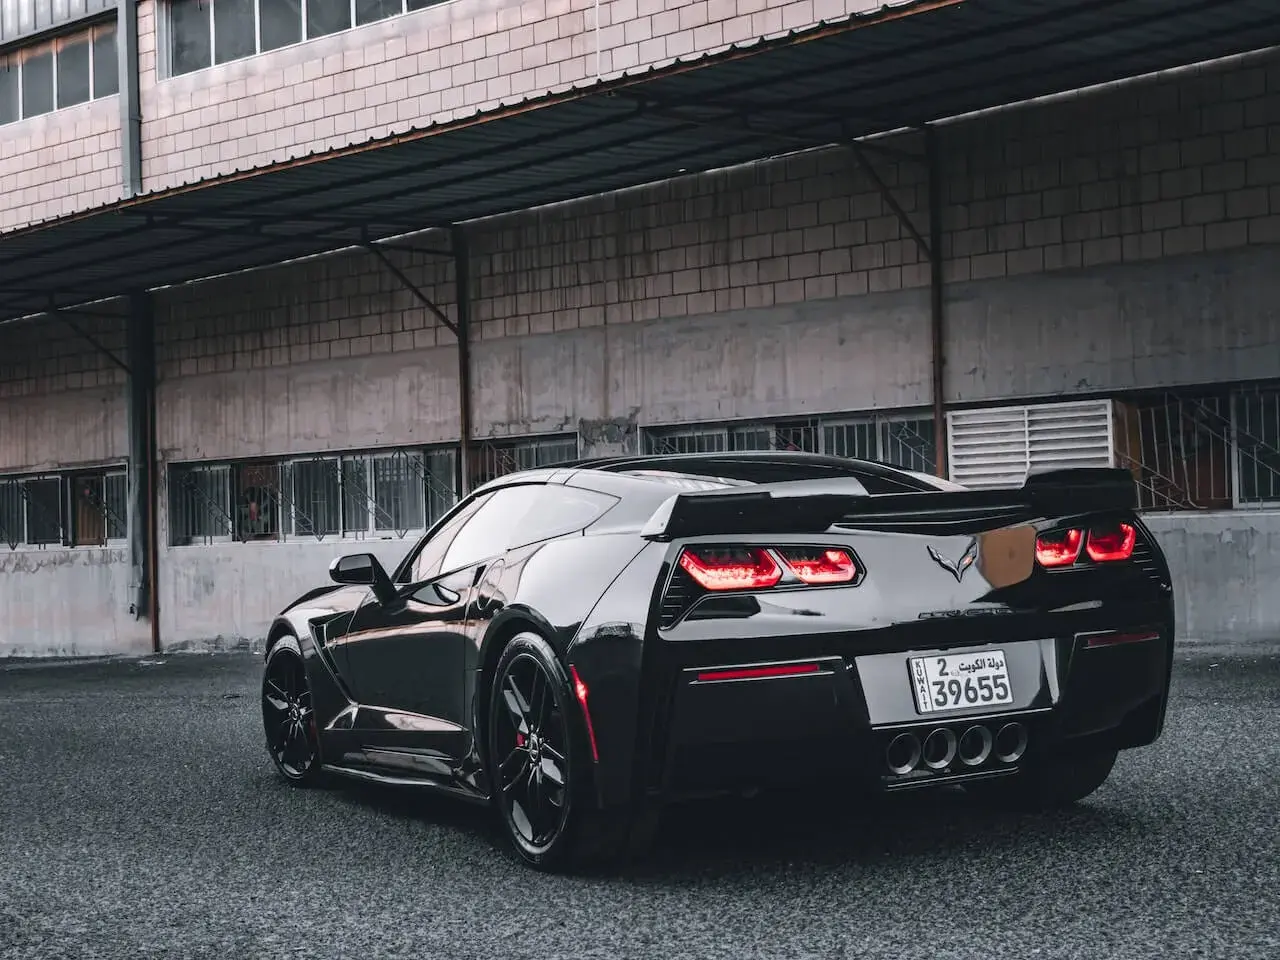 A Black Corvette Parked Under a Roof